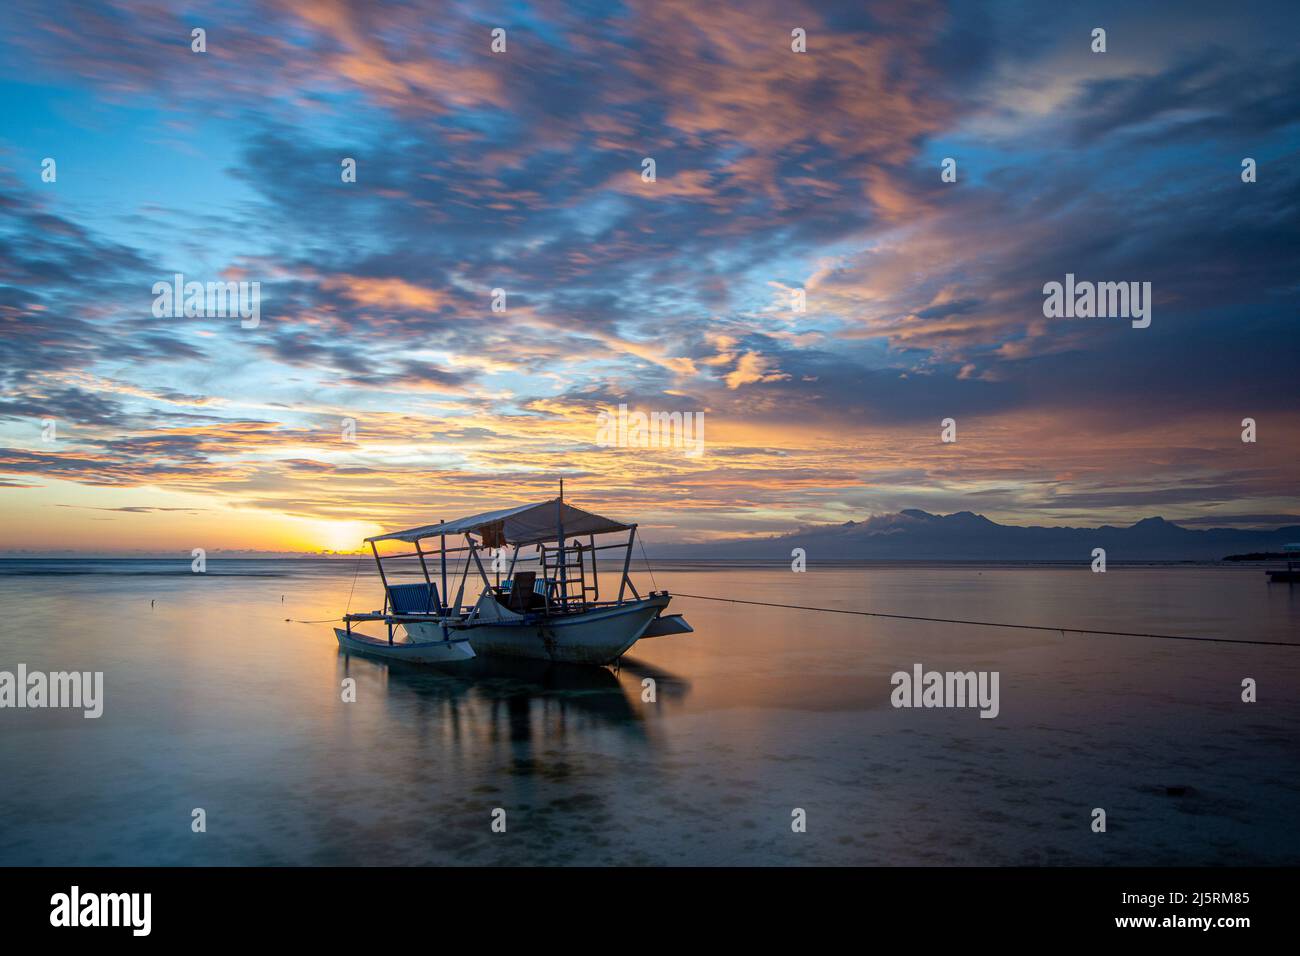 Sunset on beach on Siquijor Island, Philippines - 16.11.2019 Stock Photo